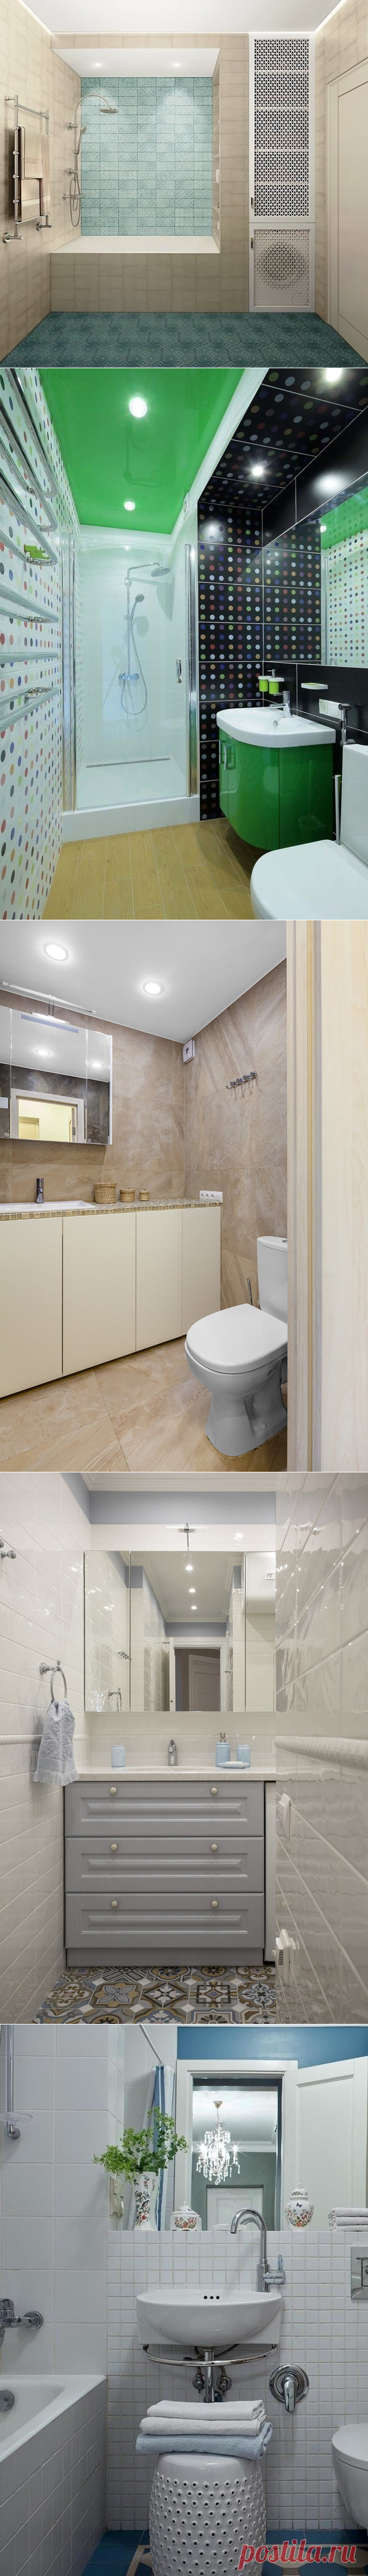 Как быстро сделать ремонт в ванной комнате: советы профи | Свежие идеи дизайна интерьеров, декора, архитектуры на INMYROOM